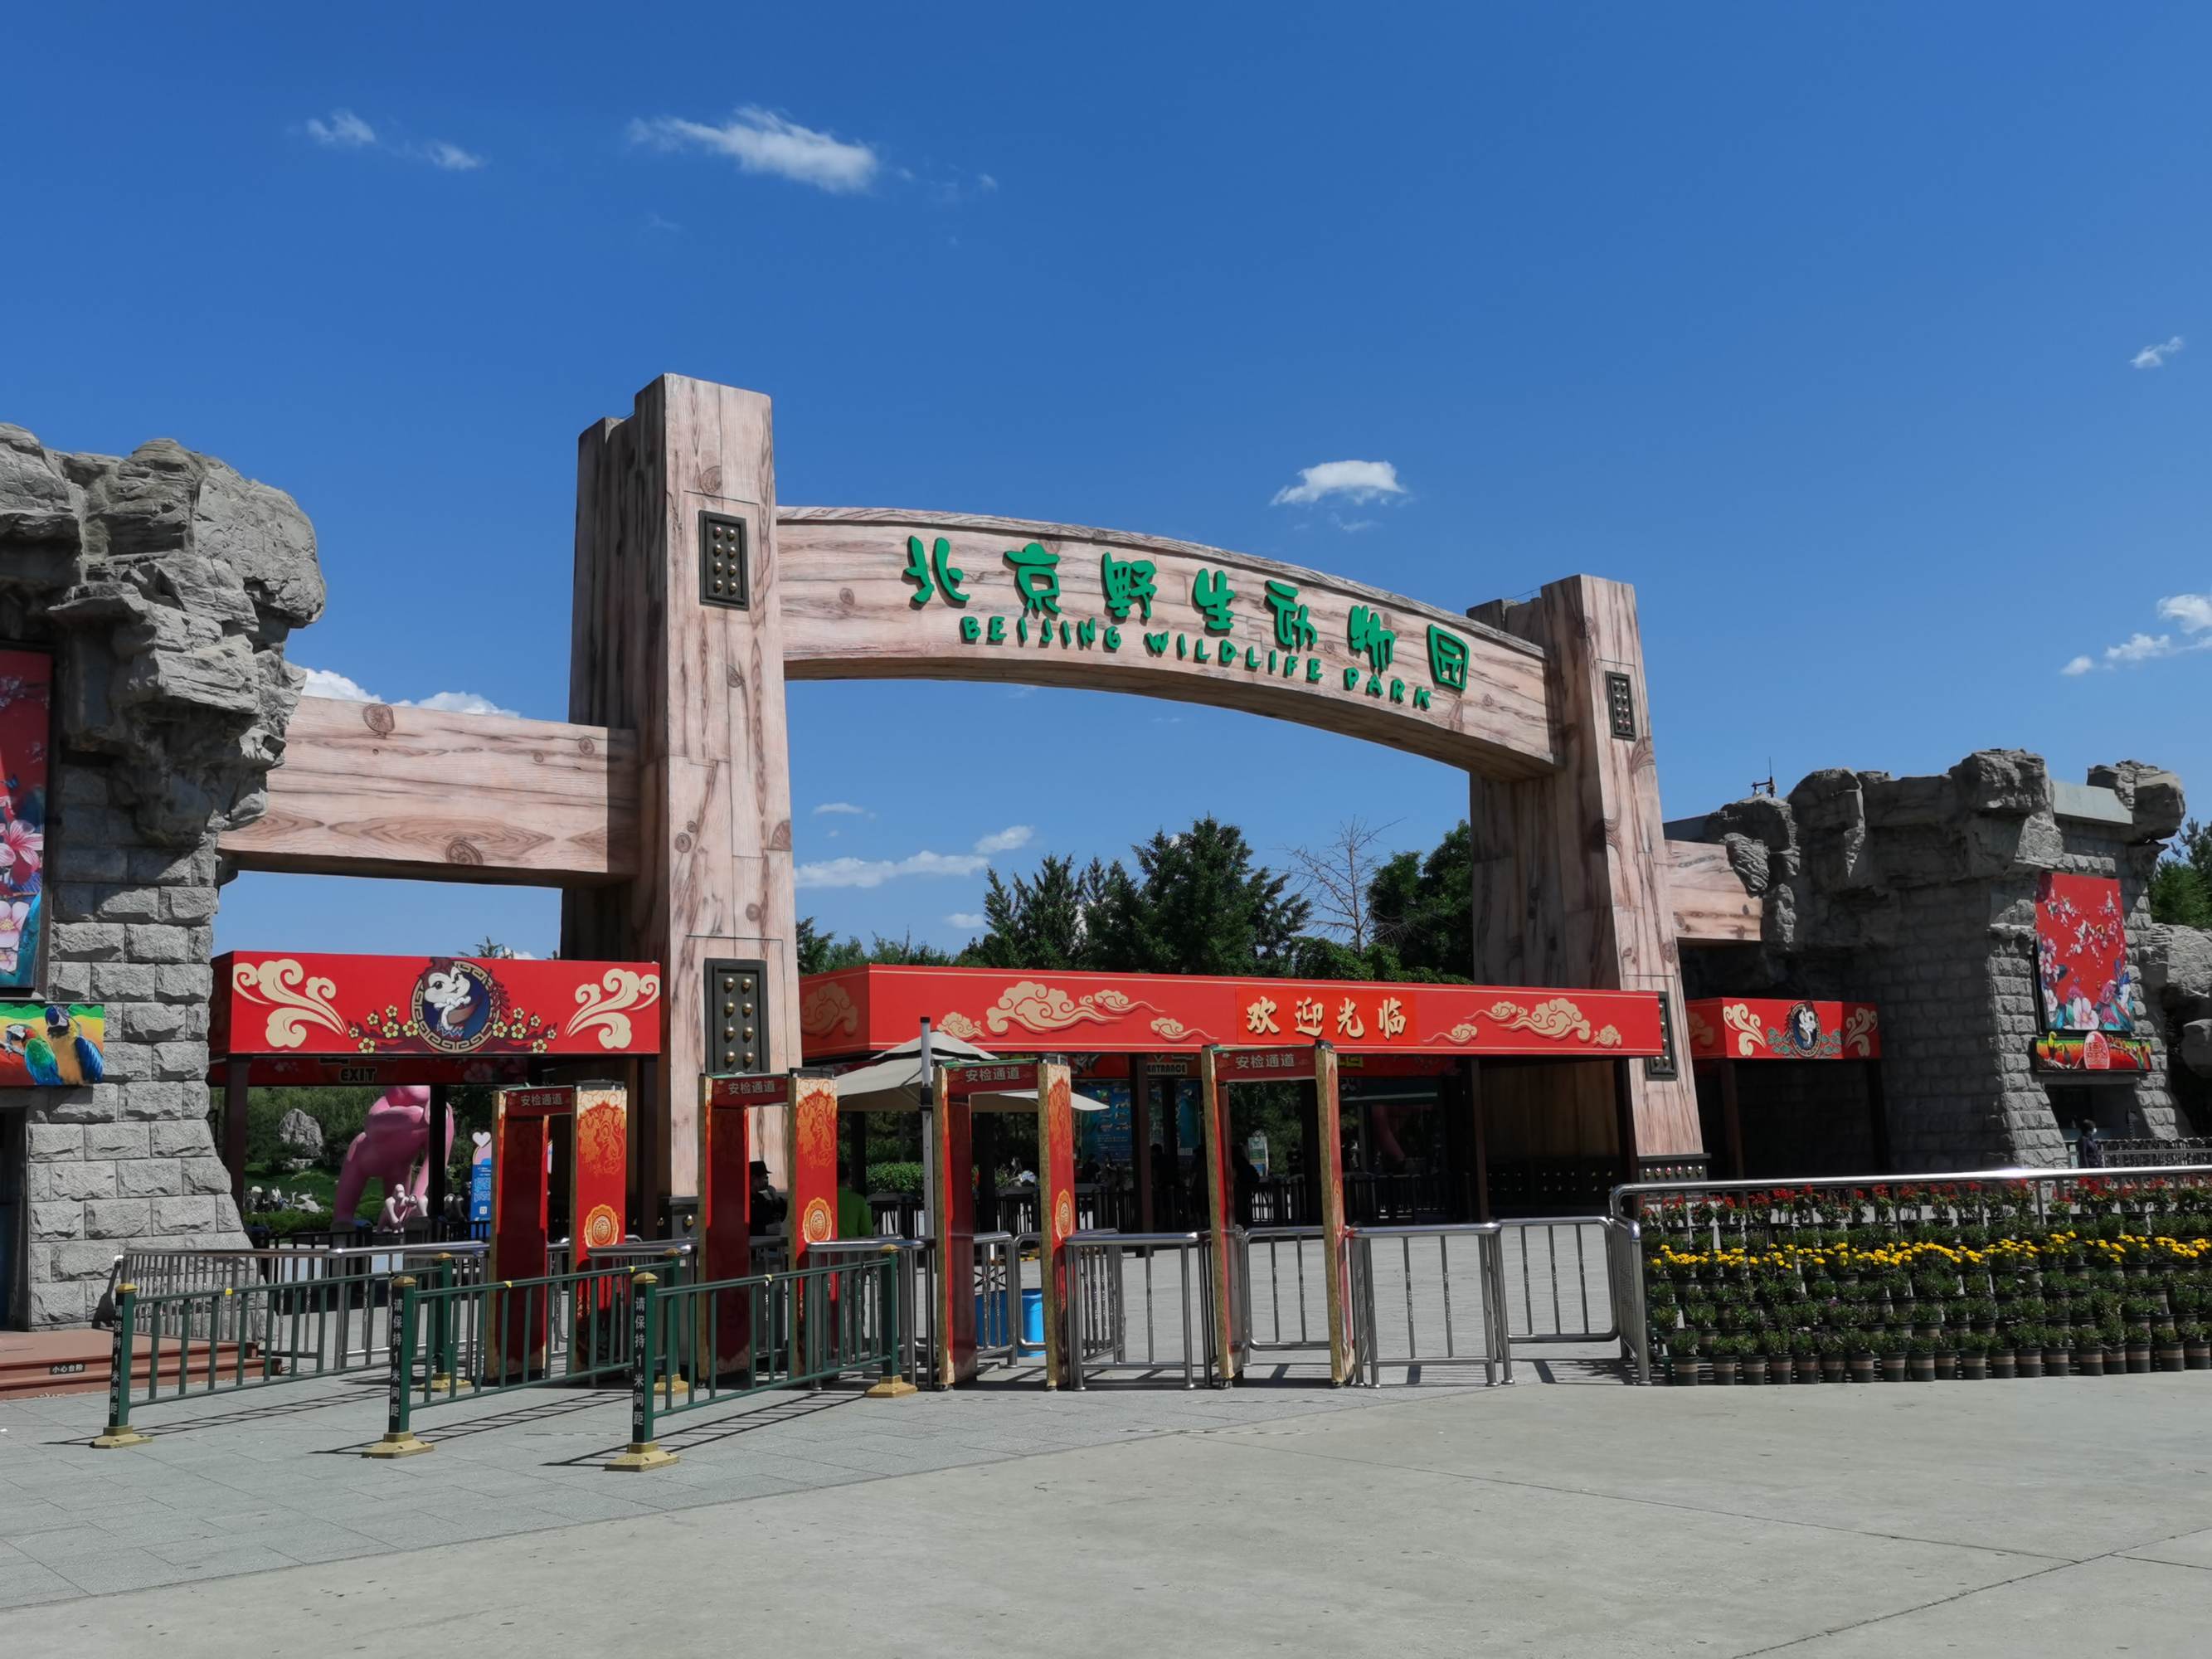 北京野生动物园门票多少？北京野生动物园官网售票平台：畅游北野微信小程序。也可关注美团、大众、携程、北京旅游网等网站，提前预约购票。。。